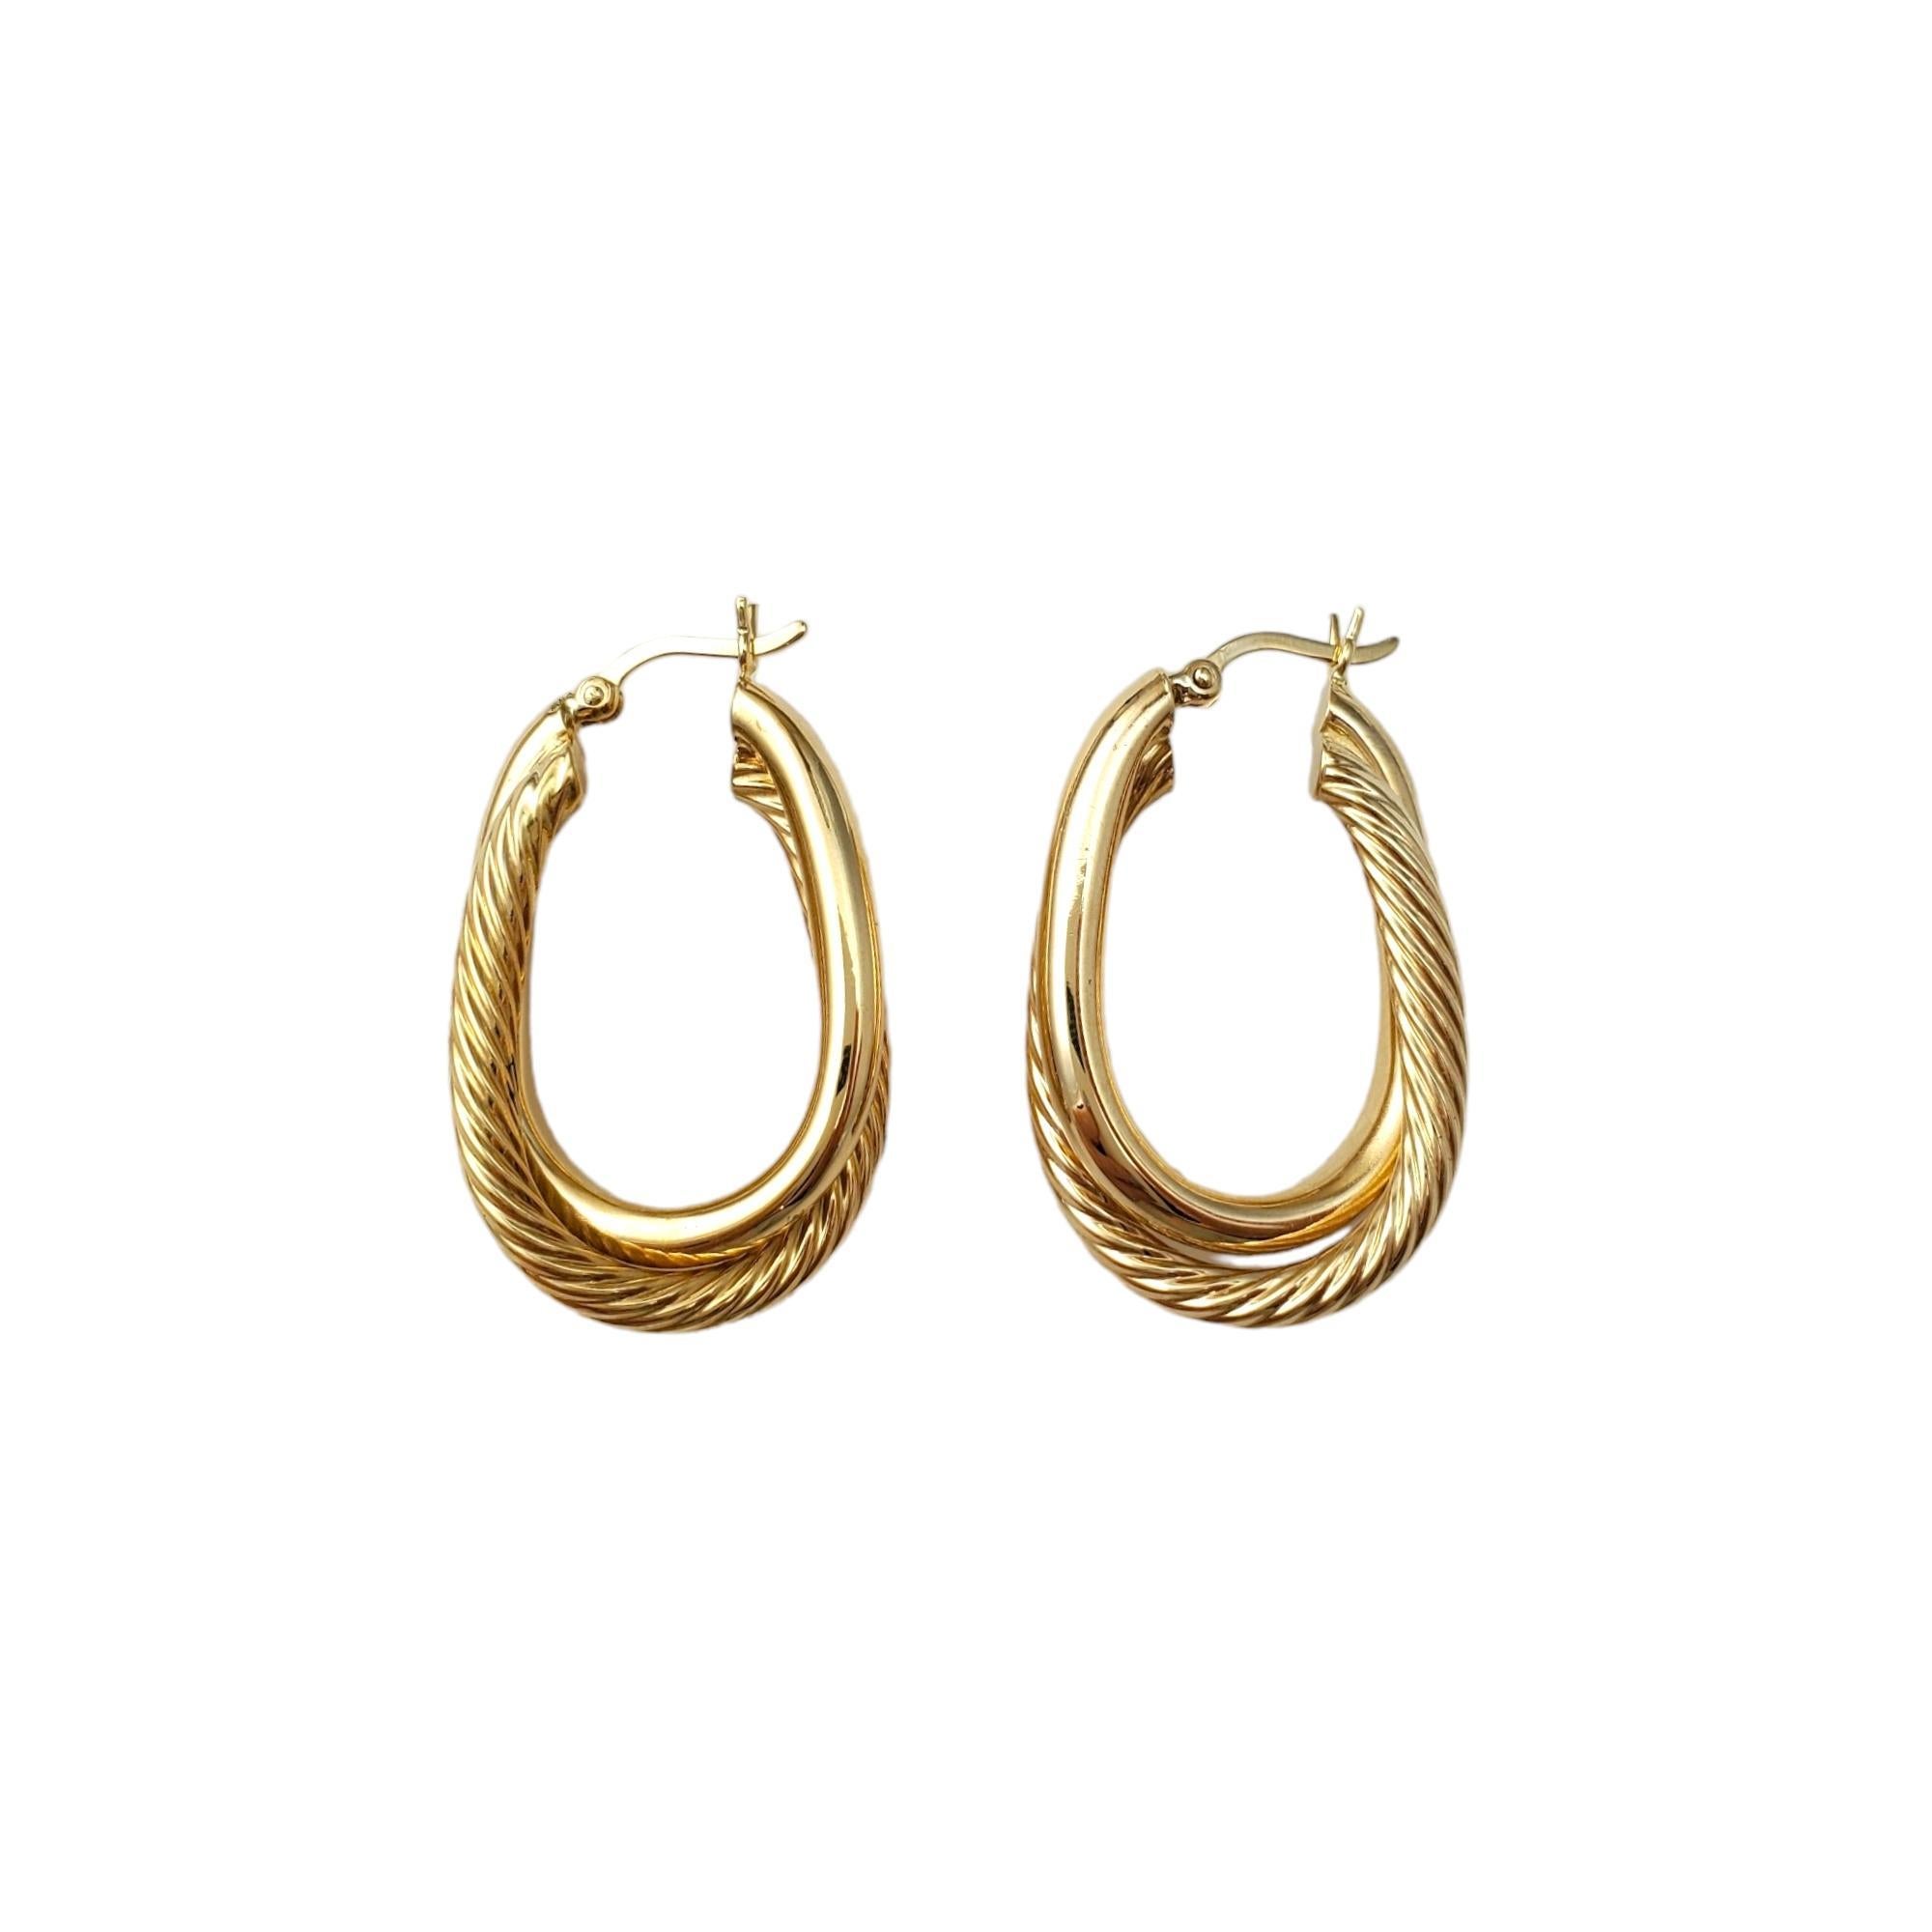 Boucles d'oreilles doubles en or jaune 14K - Vintage

Ces boucles d'oreilles doubles présentent deux magnifiques anneaux entrelacés. 

Une bague est en or lisse, l'autre est en forme de câble. Forme ovale

Taille : 31,7 mm X 7,1 mm X 3,2 mm

Poids :